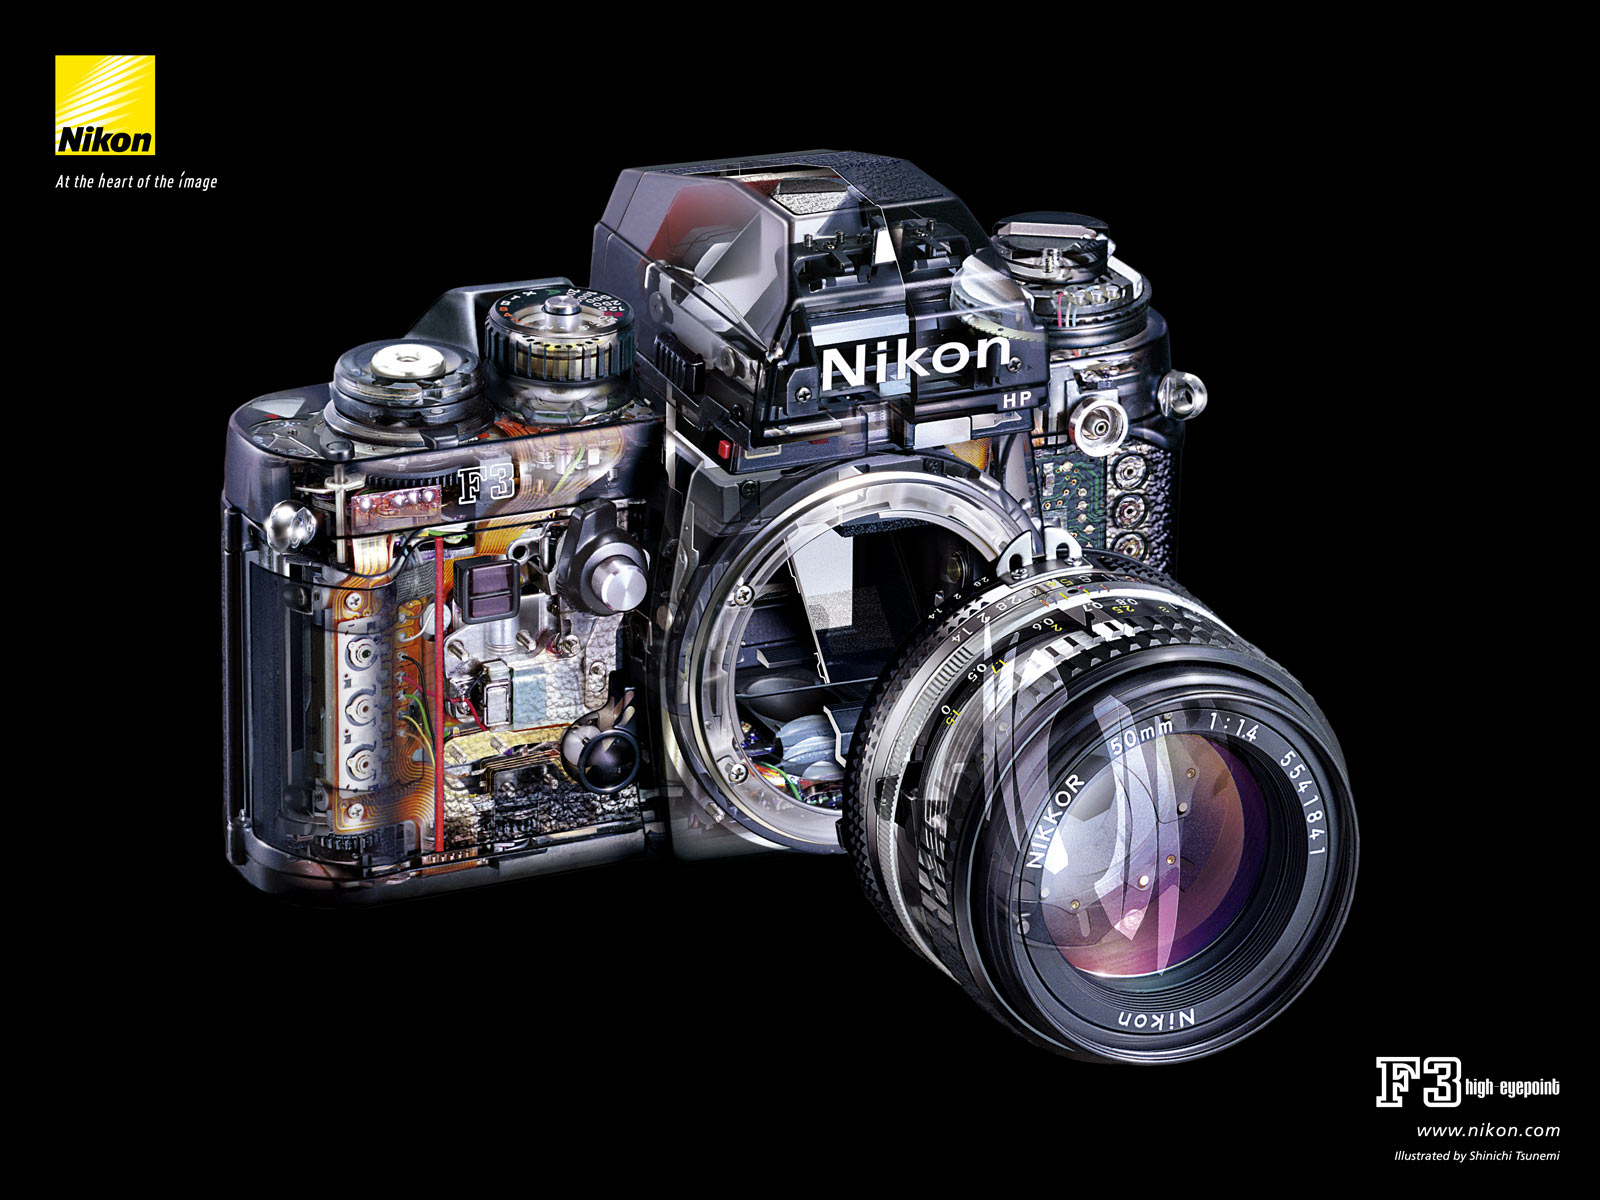 니콘 배경 화면 hd,카메라,리플렉스 카메라,디지털 카메라,단일 렌즈 리플렉스 카메라,렌즈